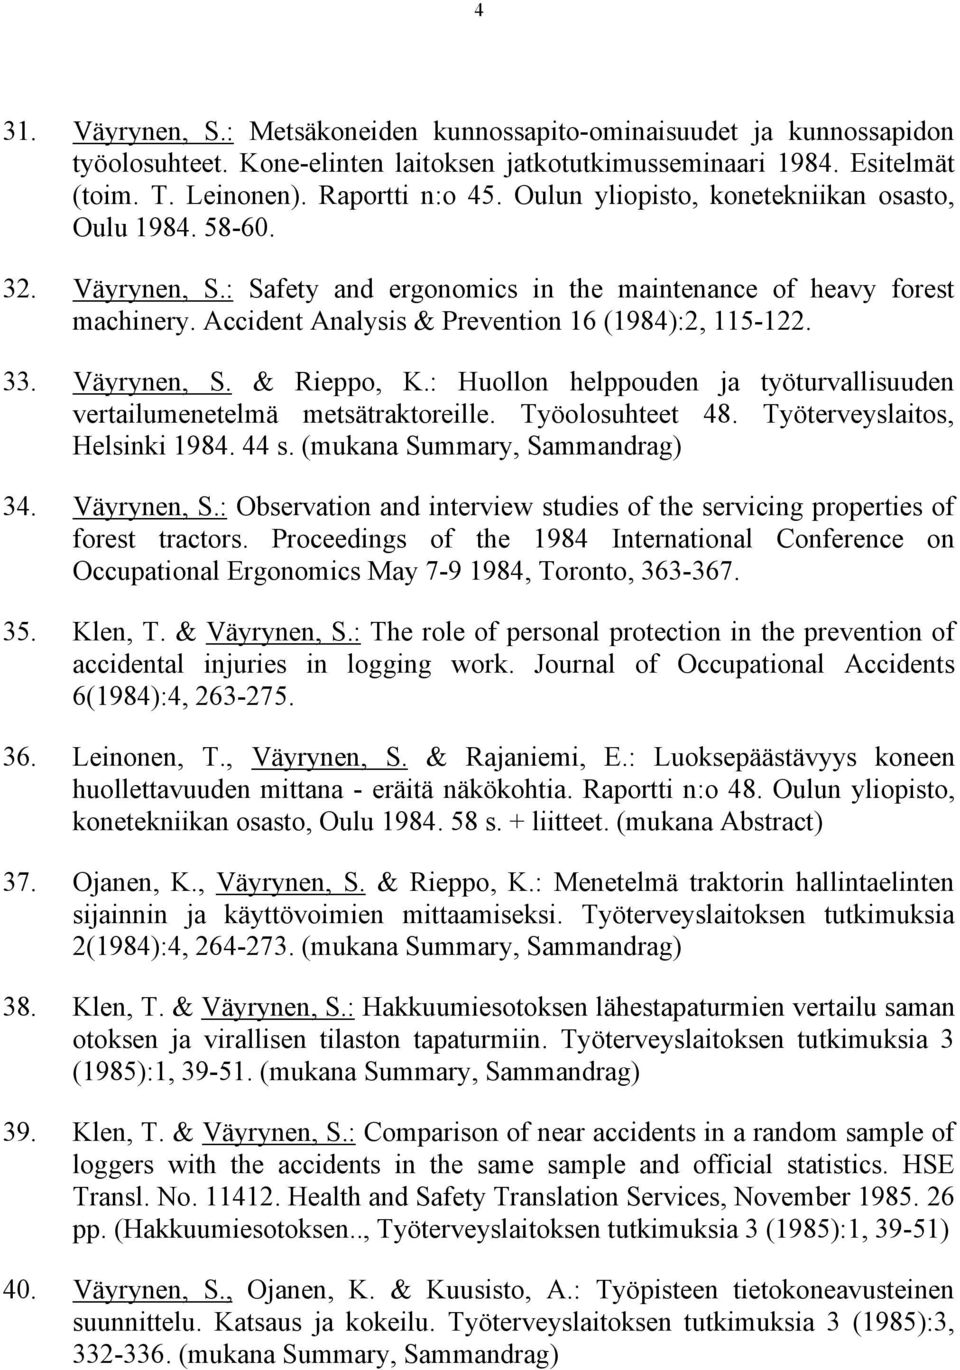 Väyrynen, S. & Rieppo, K.: Huollon helppouden ja työturvallisuuden vertailumenetelmä metsätraktoreille. Työolosuhteet 48. Työterveyslaitos, Helsinki 1984. 44 s. (mukana Summary, Sammandrag) 34.